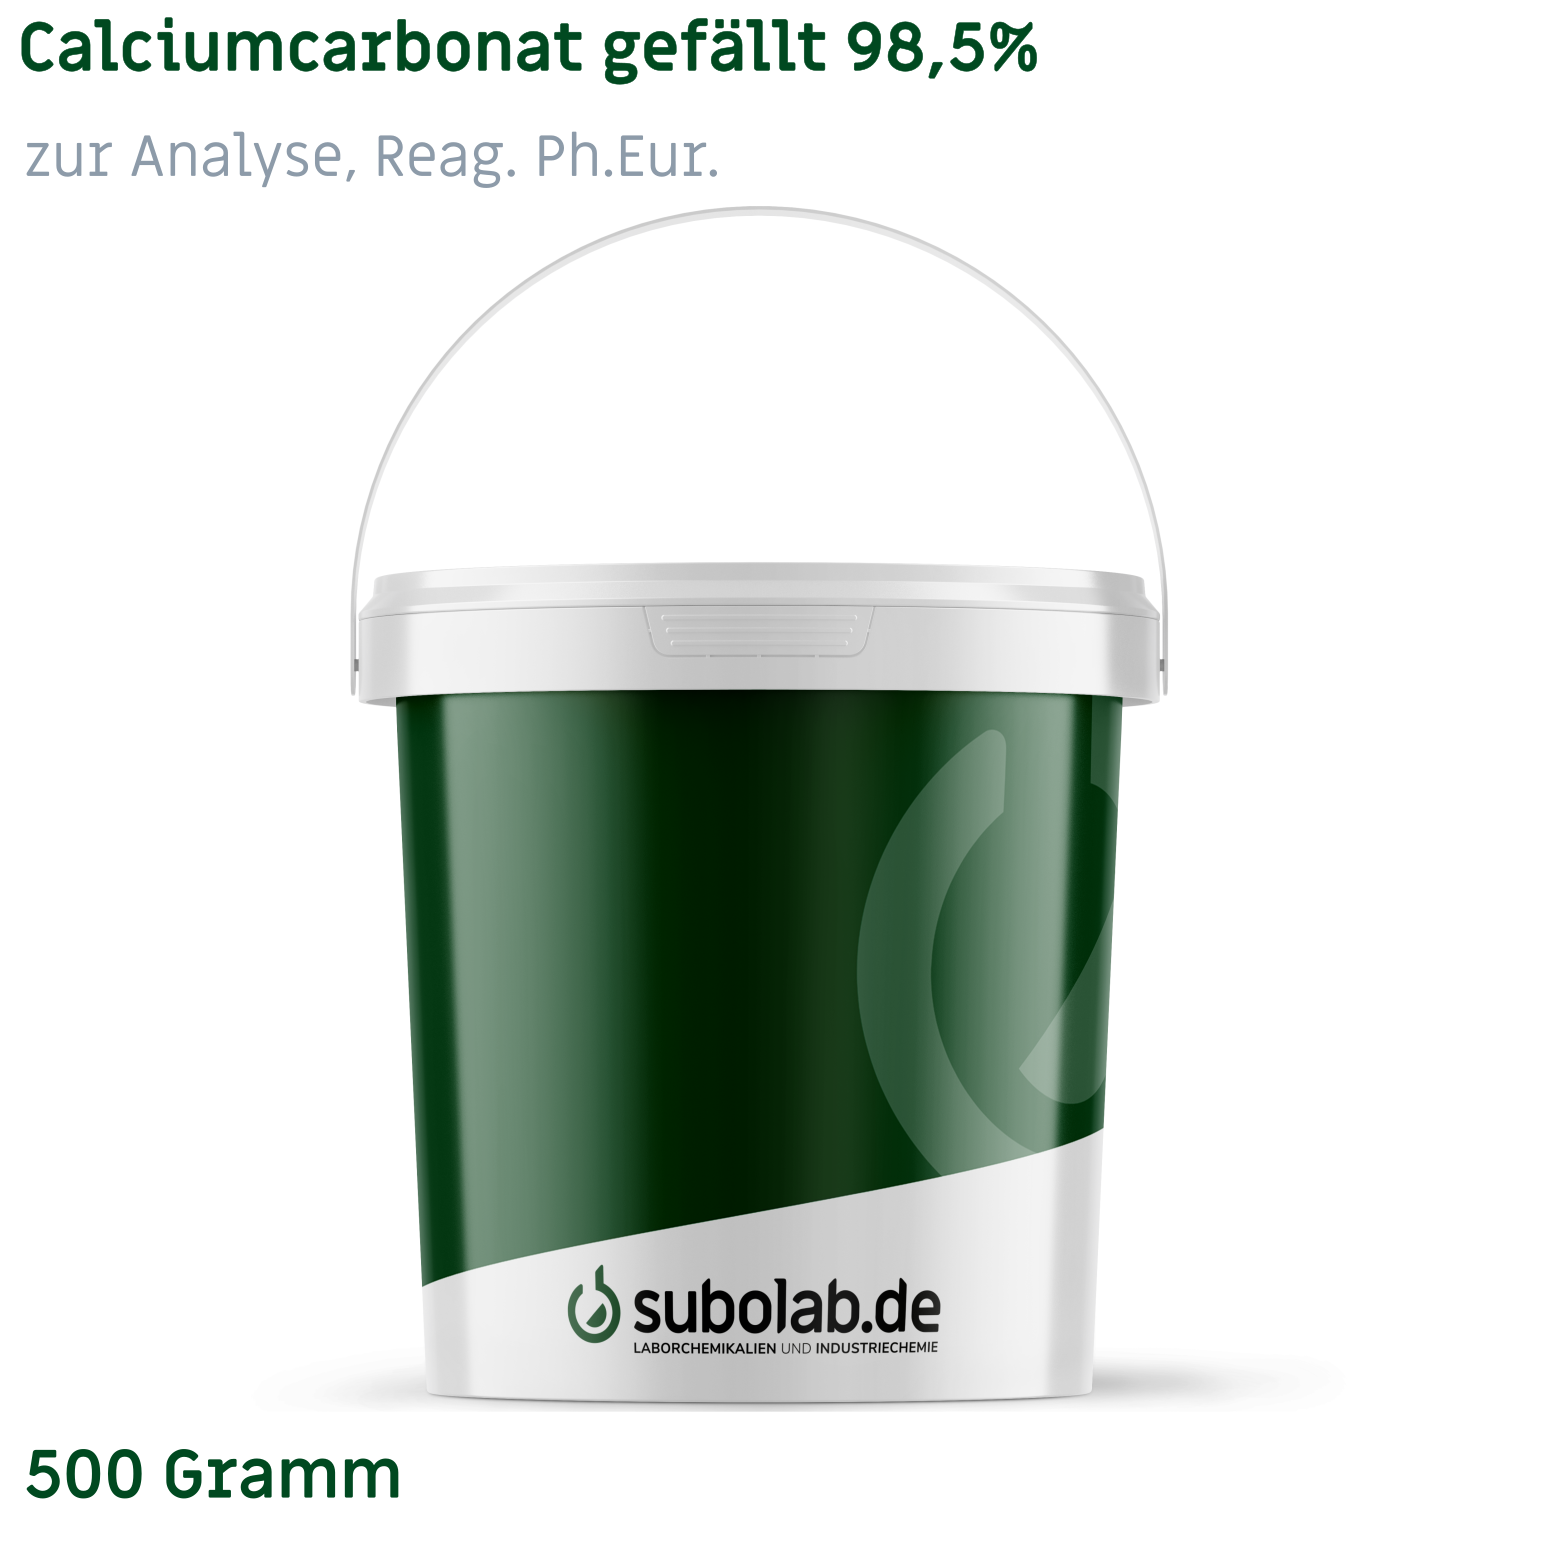 Bild von Calciumcarbonat gefällt 98,5% zur Analyse, Reag. Ph.Eur. (500 Gramm)